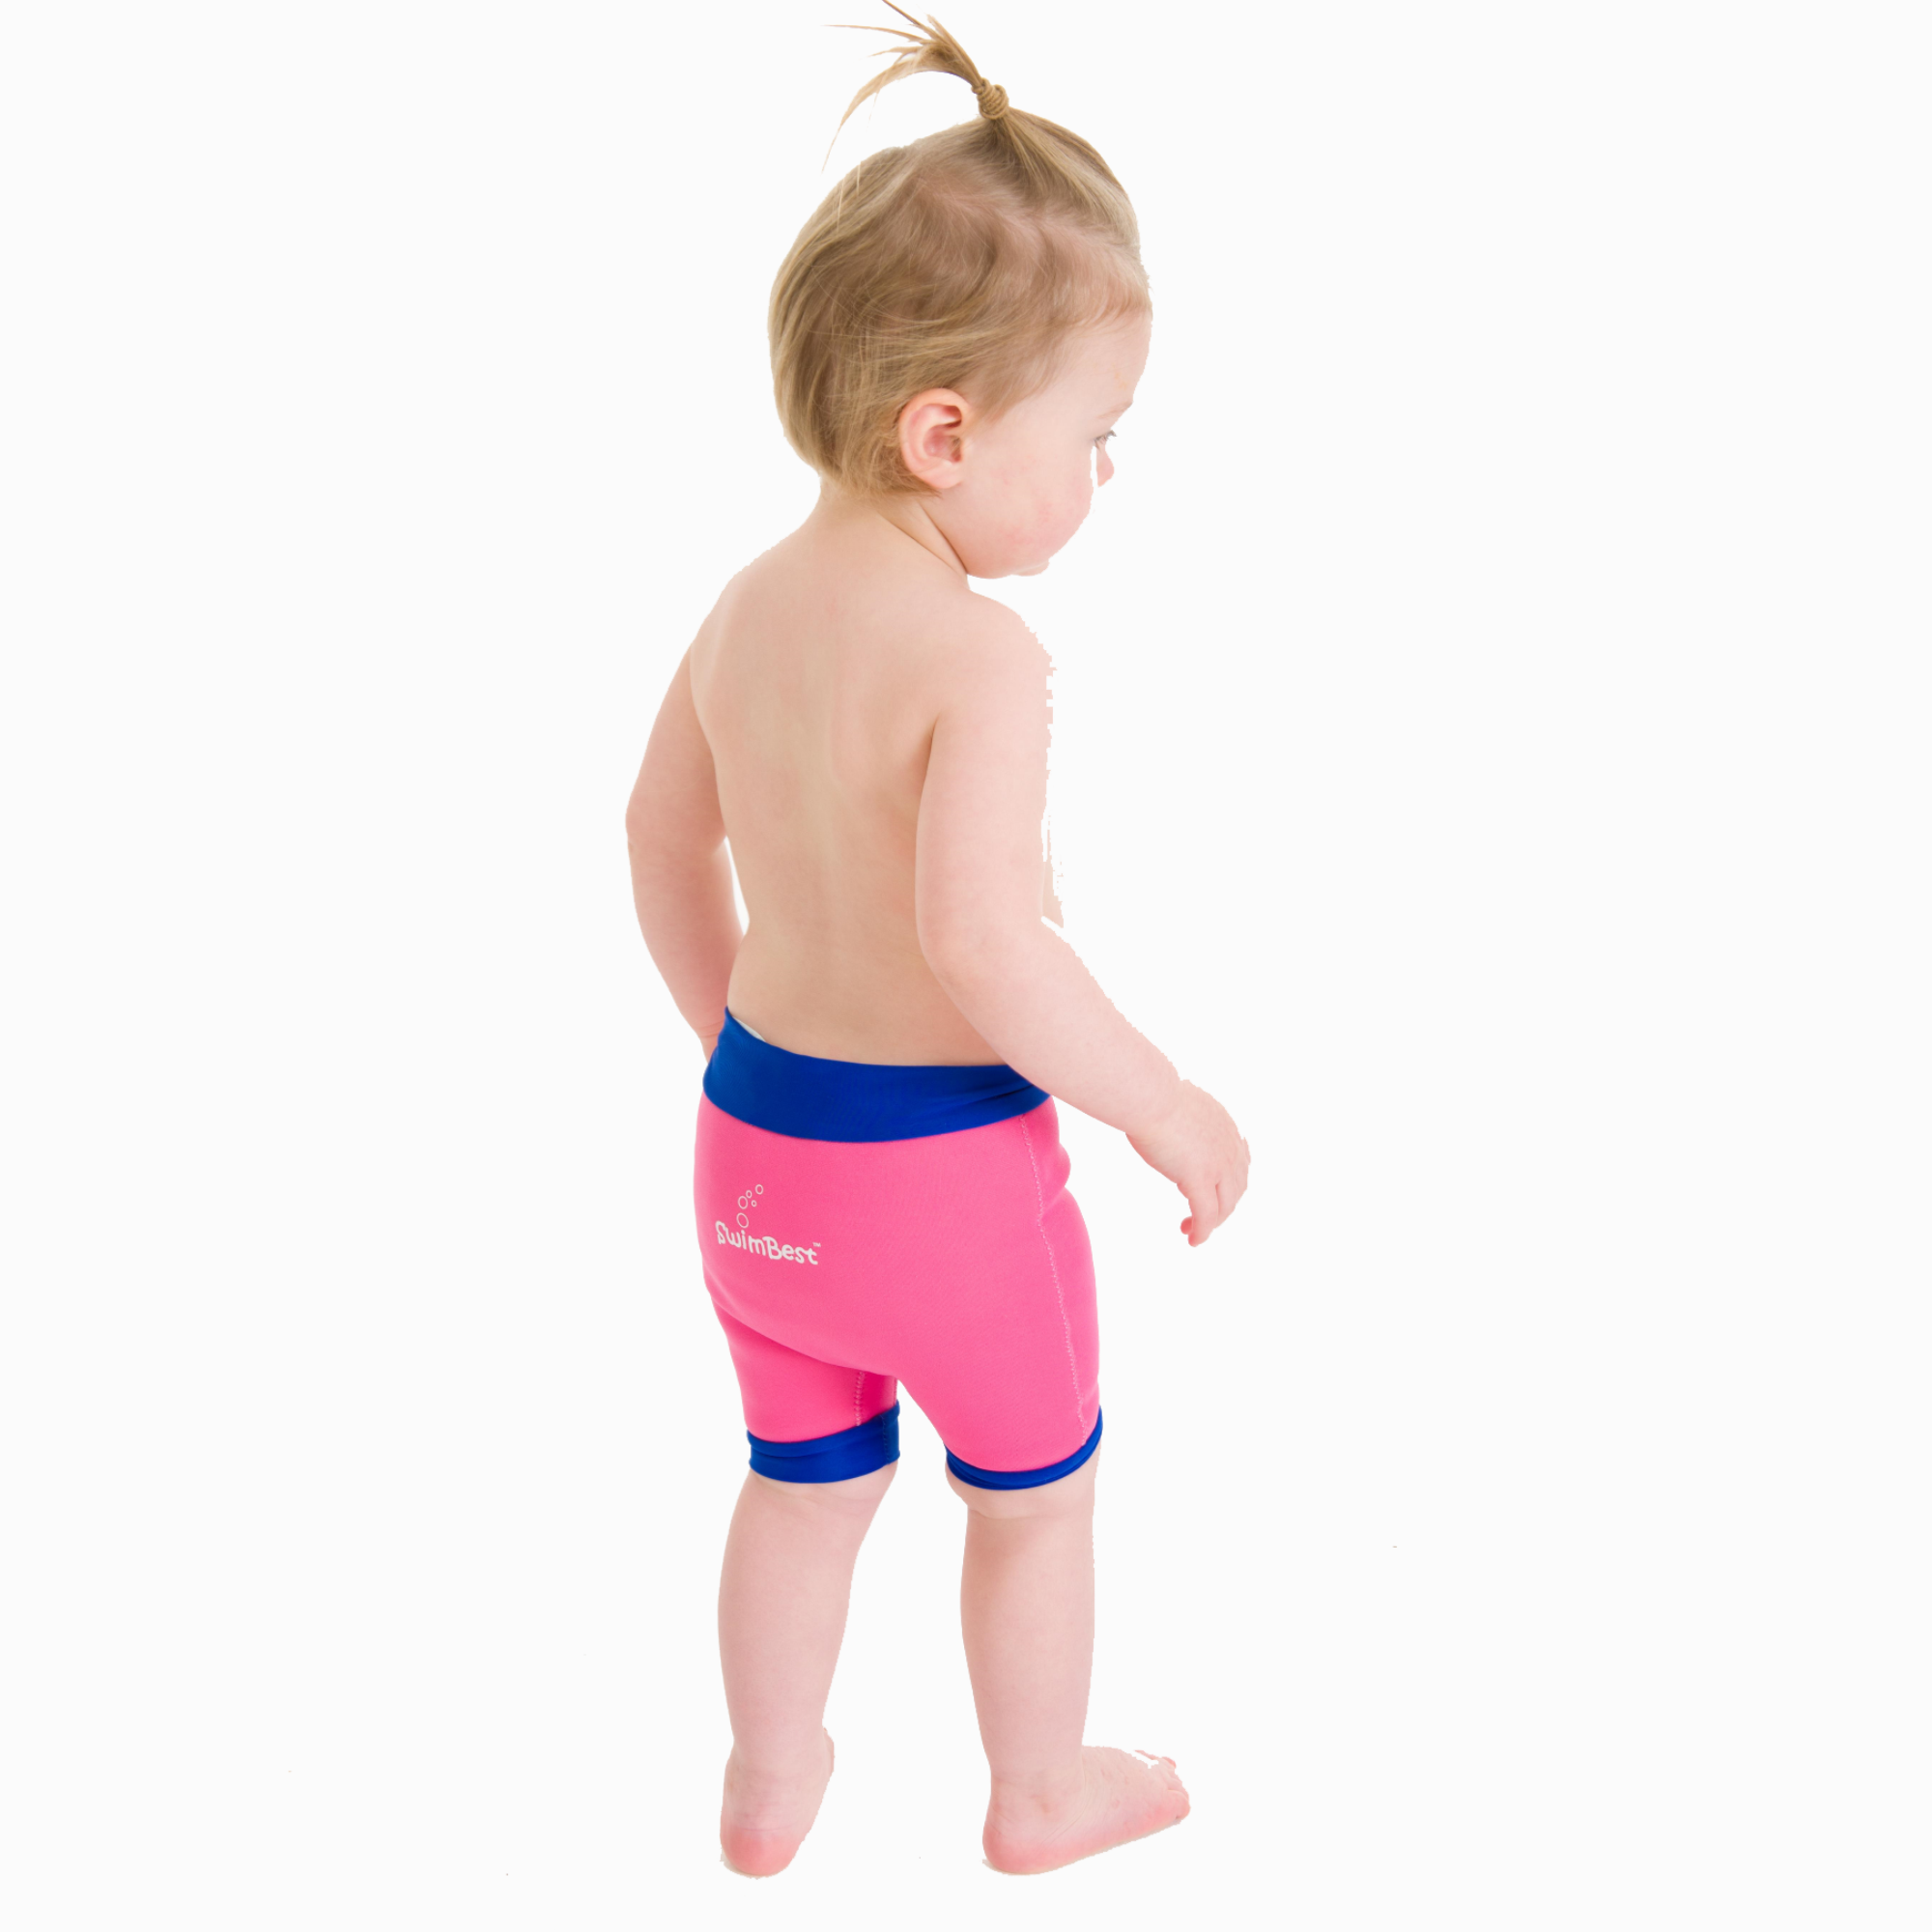 SwimBest™ Swim Jacket with Safety Strap – Swimbest